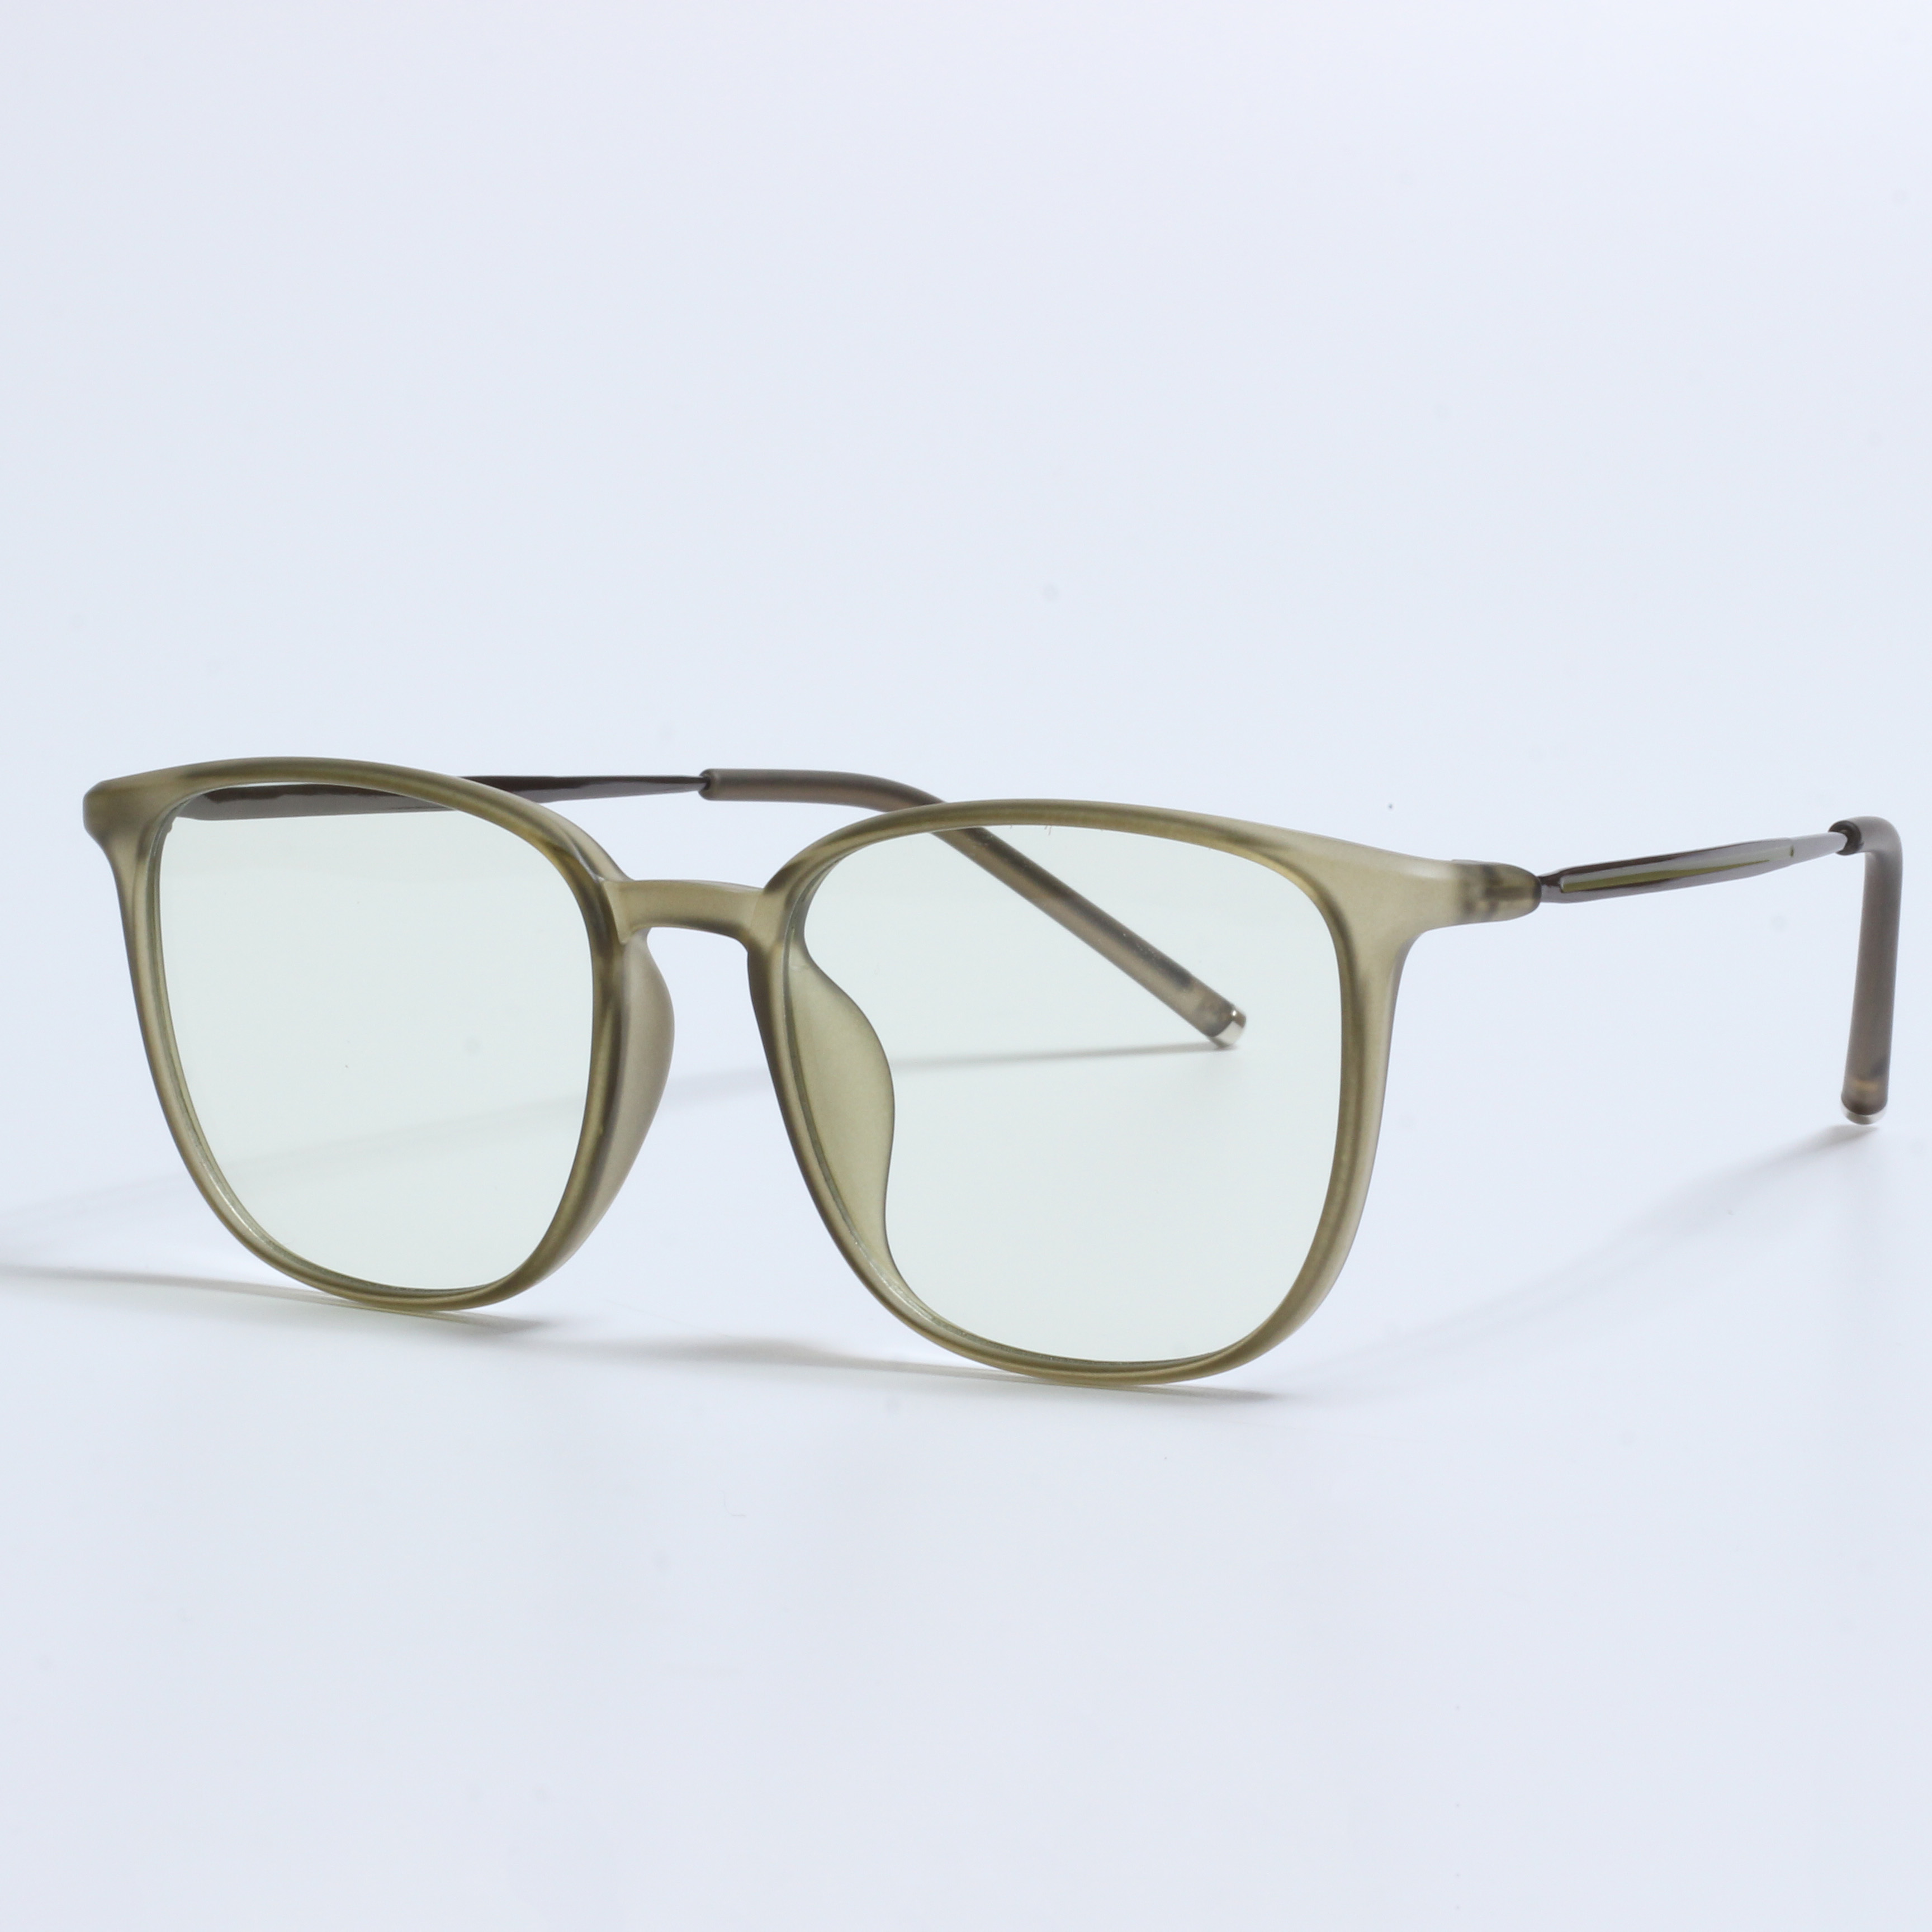 New retro lunette anti lumiere designer prescription glasses (5)